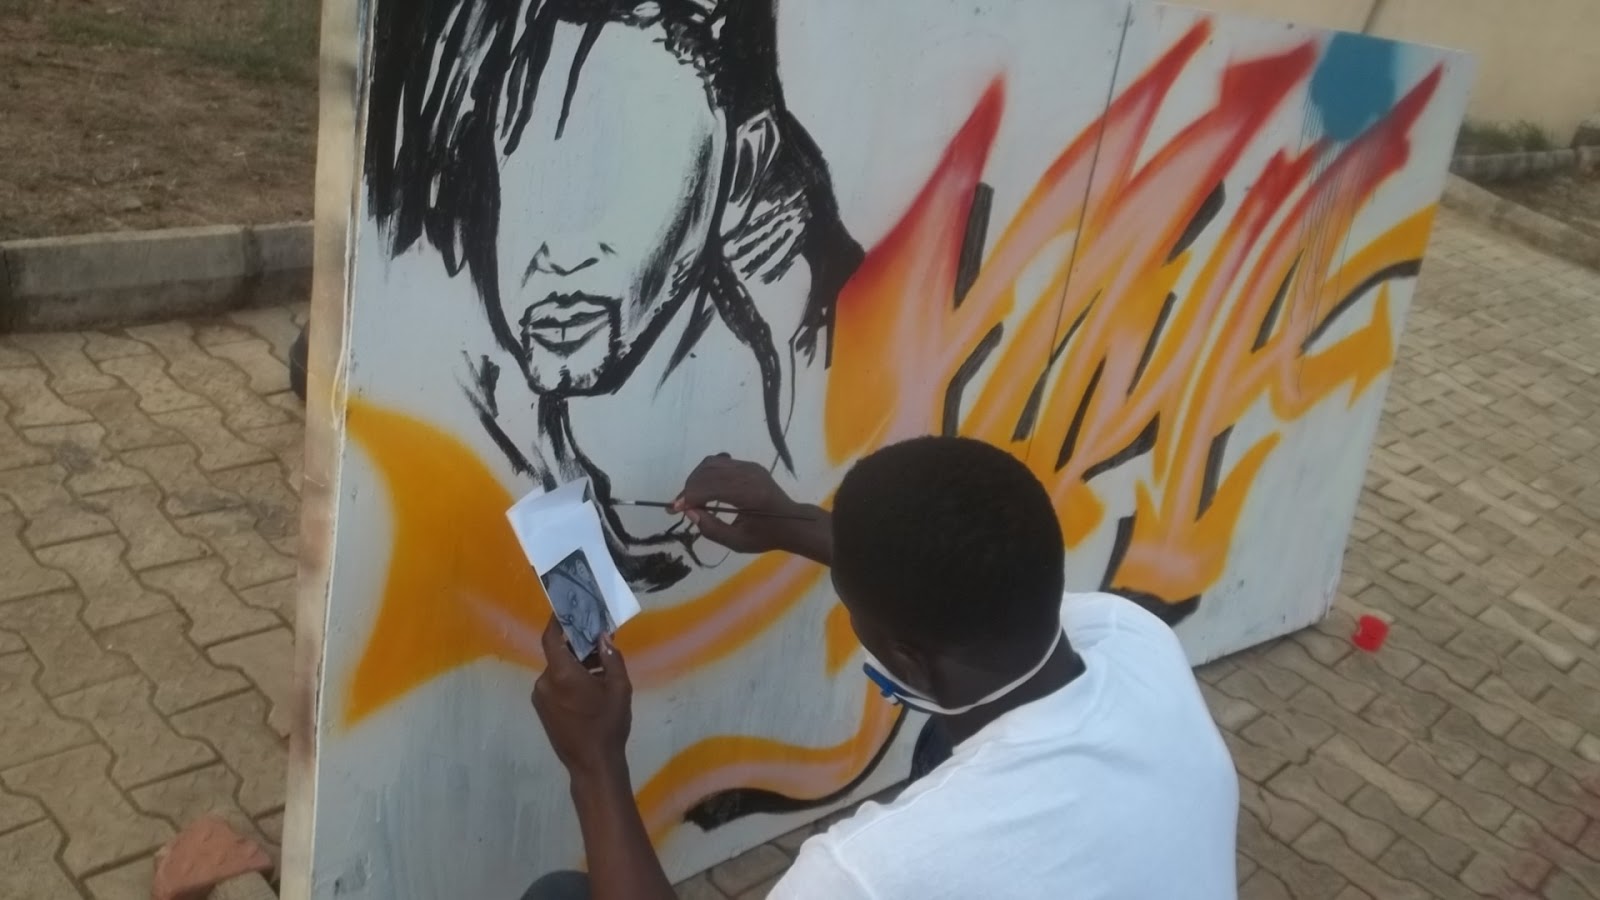 Coconut Grove Grapevine Graffiti Artists Win Millions From Developer